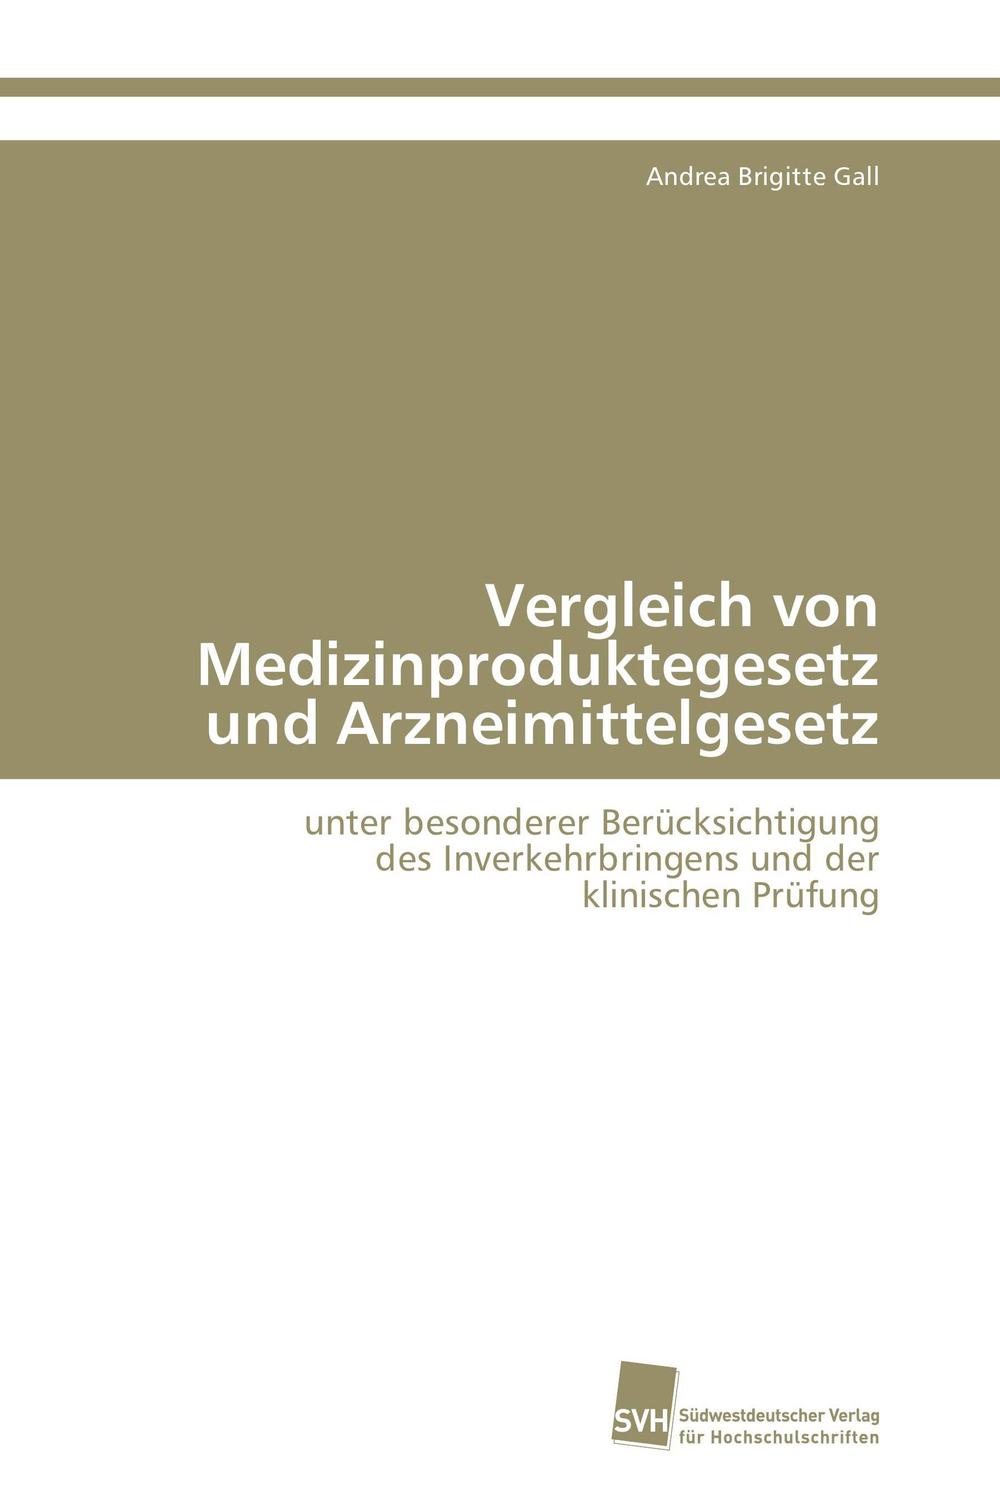 Vergleich von Medizinproduktegesetz und Arzneimittelgesetz - Andrea Brigitte Gall